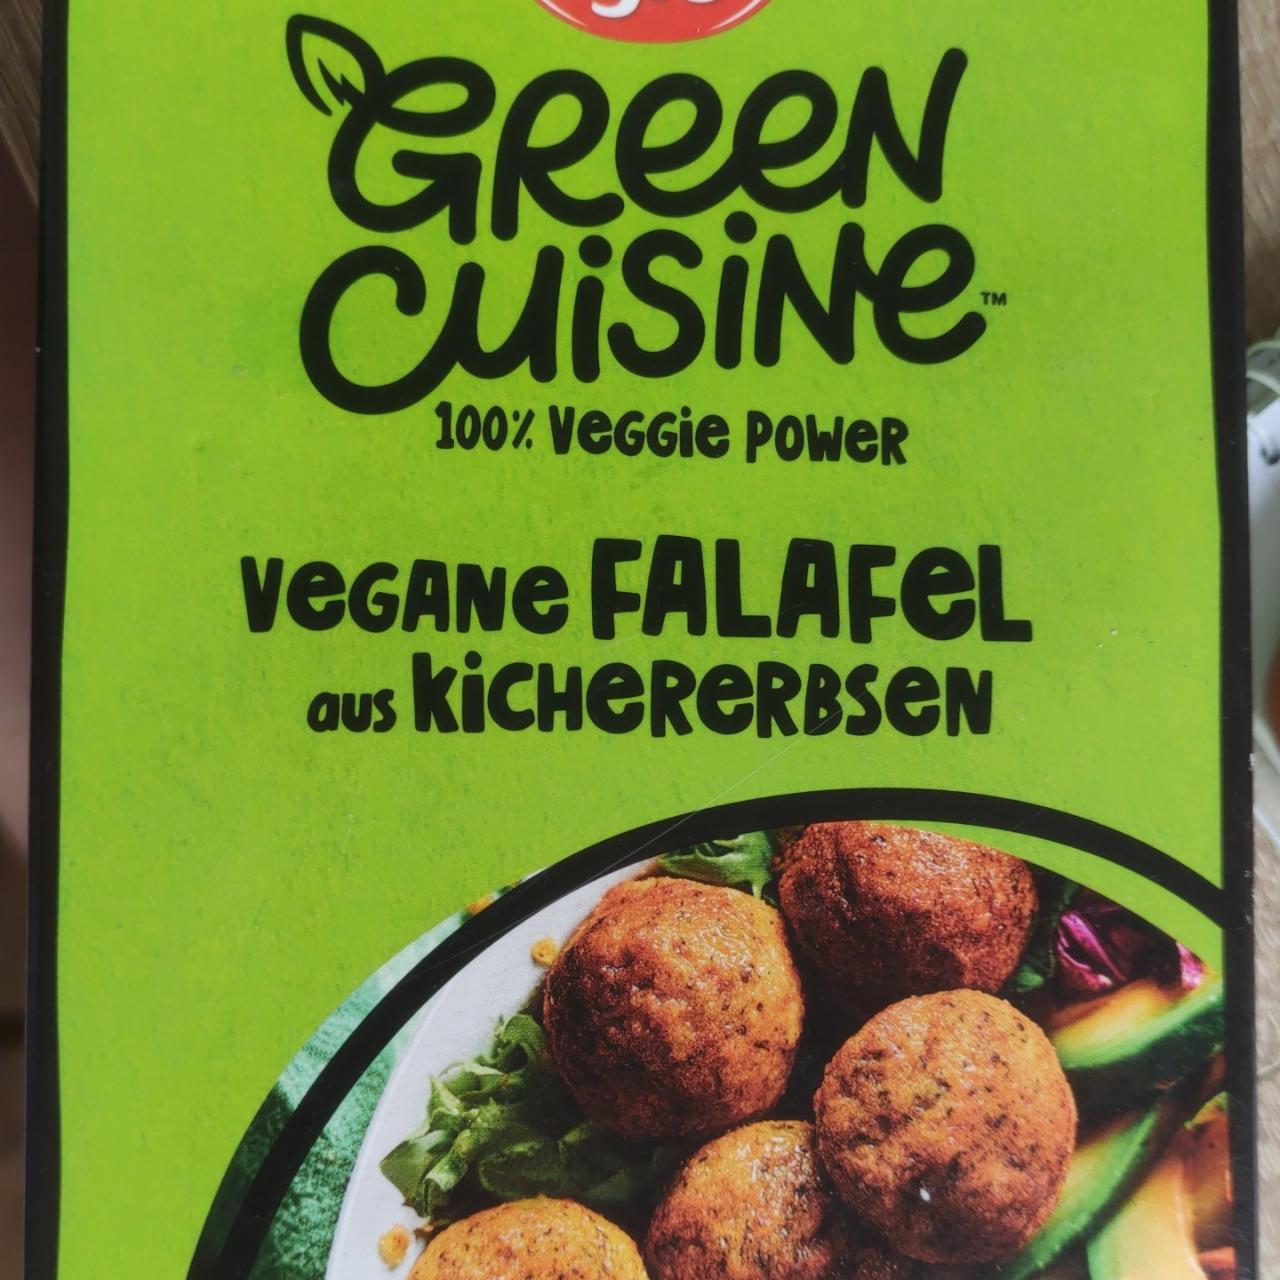 Fotografie - Green cuisine vegane falafel aus kichererbsen Iglo